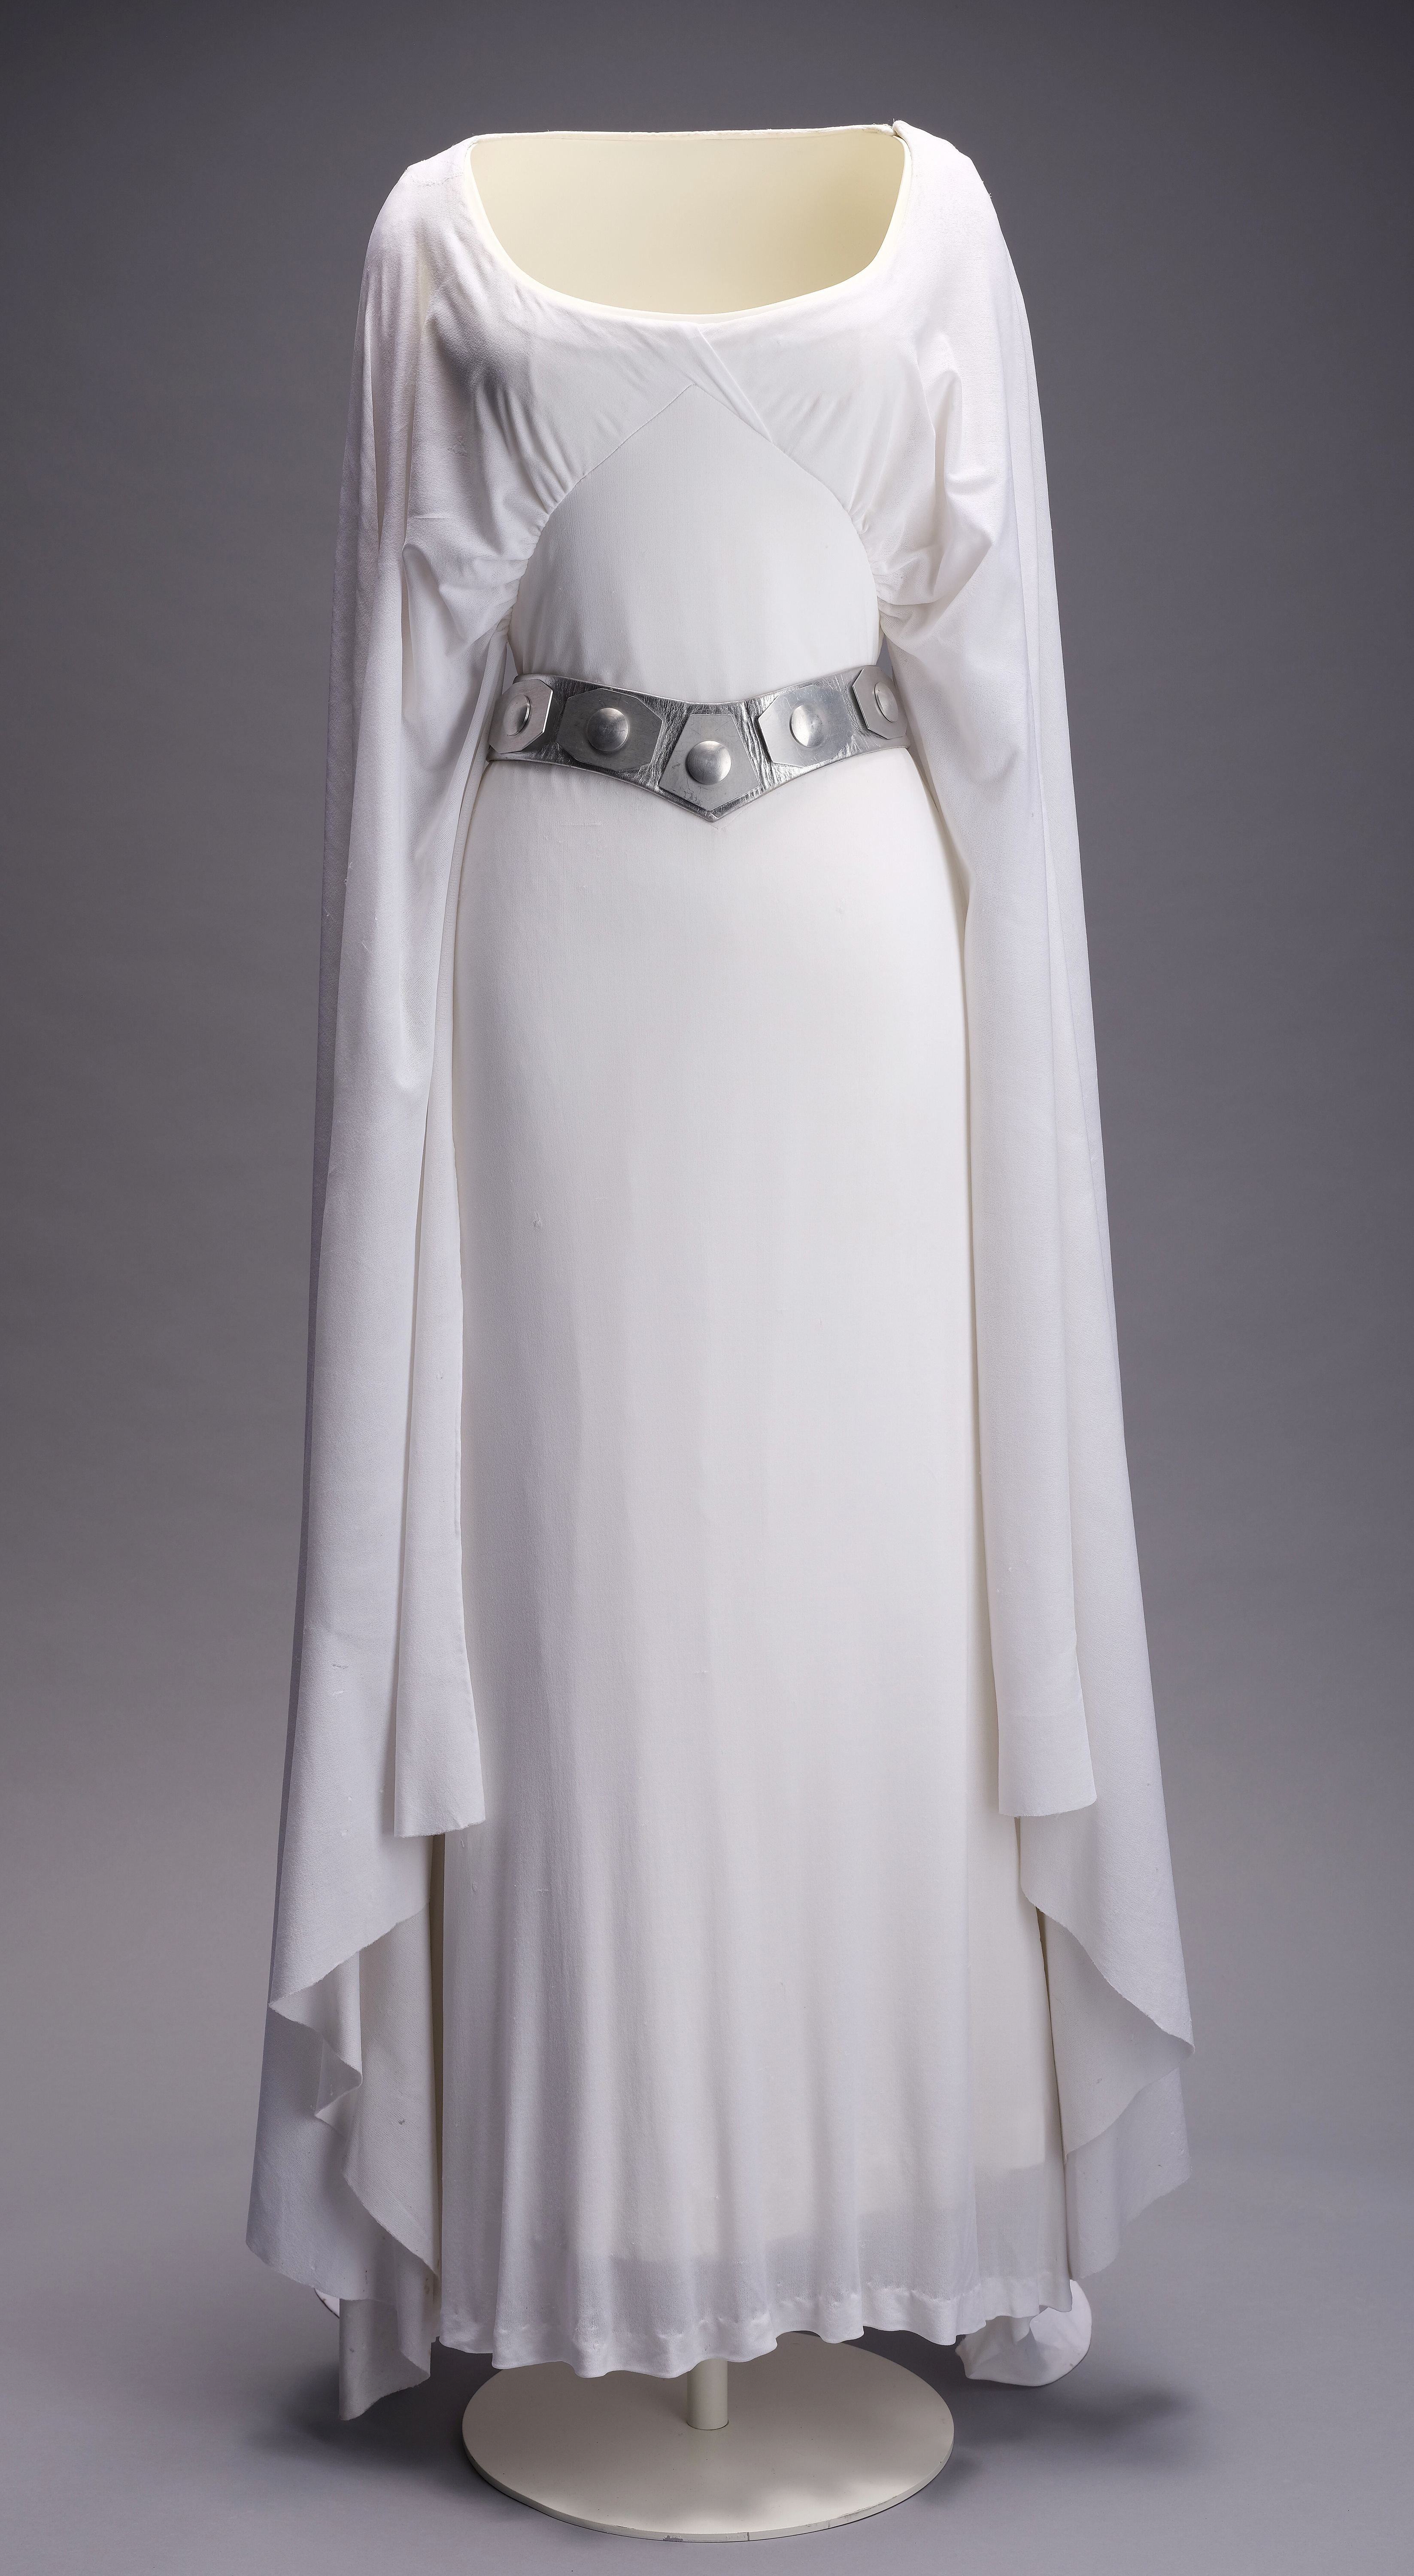 Elárverezik Leia hercegnő filmes ruháját: dollármilliókat fizethetnek a  Star Wars-rajongók érte - Blikk